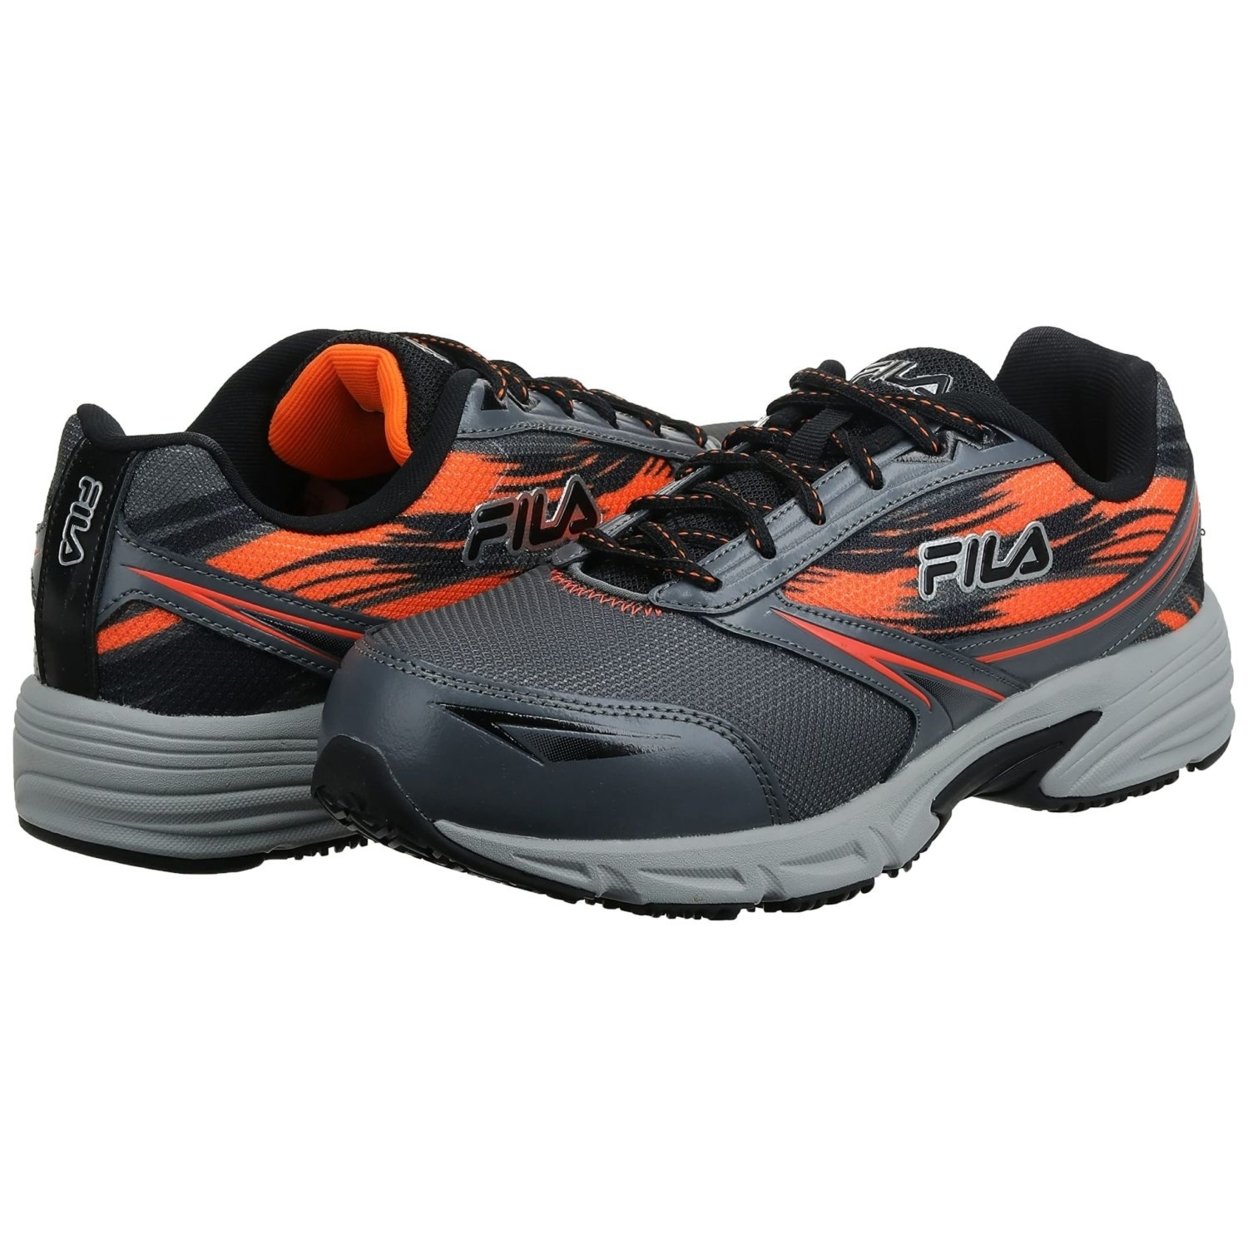 Fila Menâs Memory Meiera 2 Slip Resistant And Composite Toe Work Shoe CSRK/BLK/VORN - Castlerock/Black/Vibrant Orange, 10.5